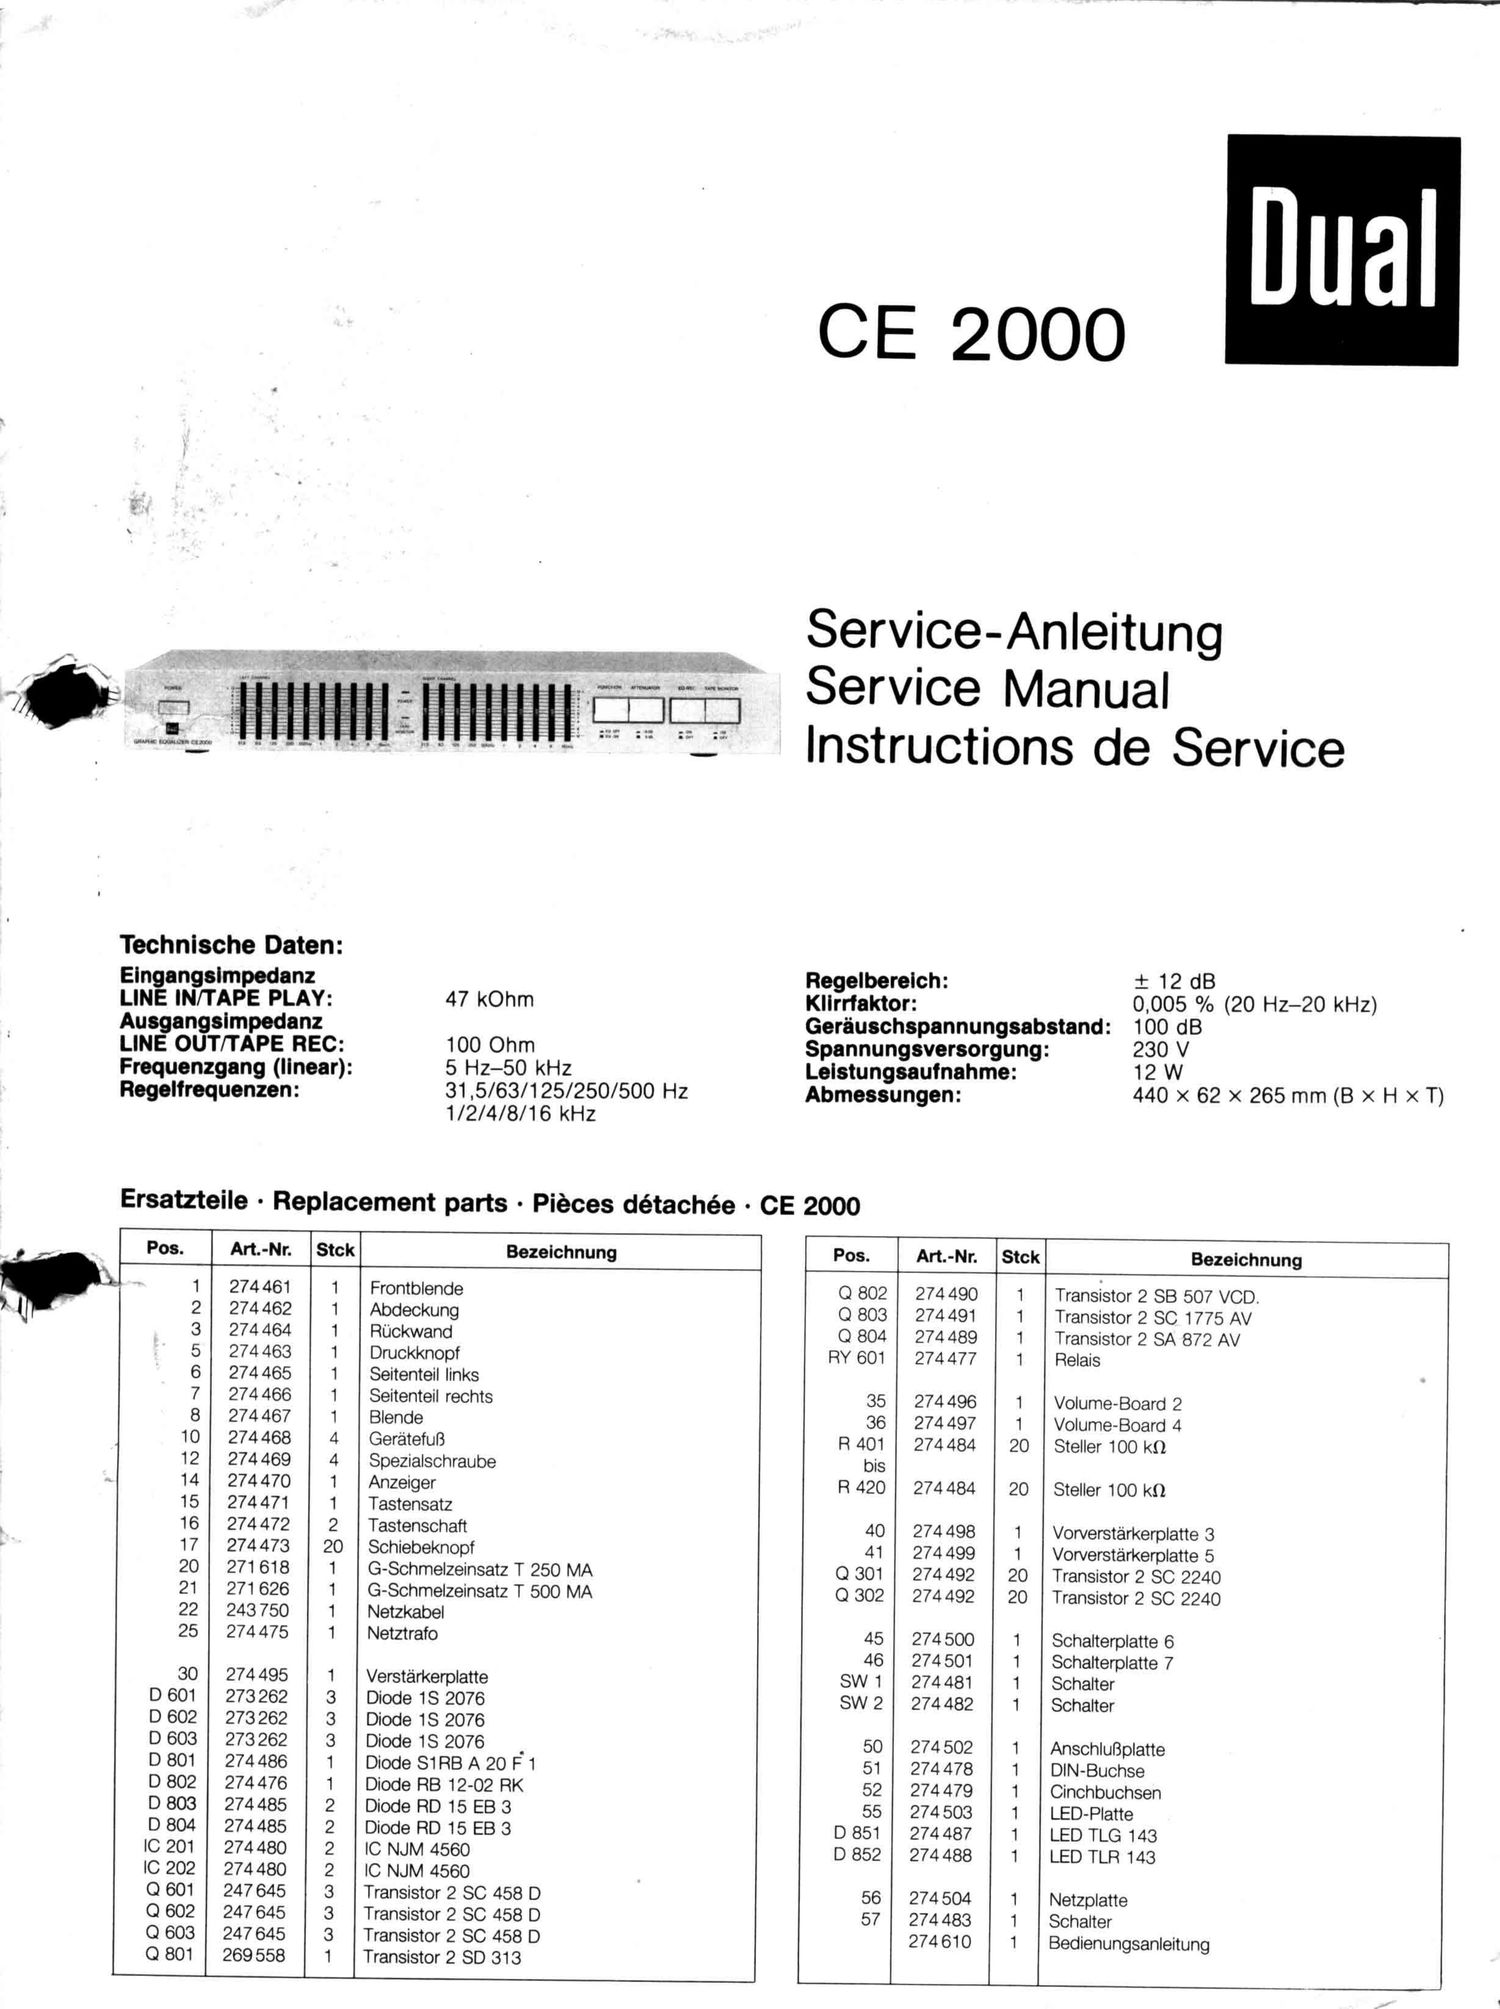 Dual CE 2000 Service Manual